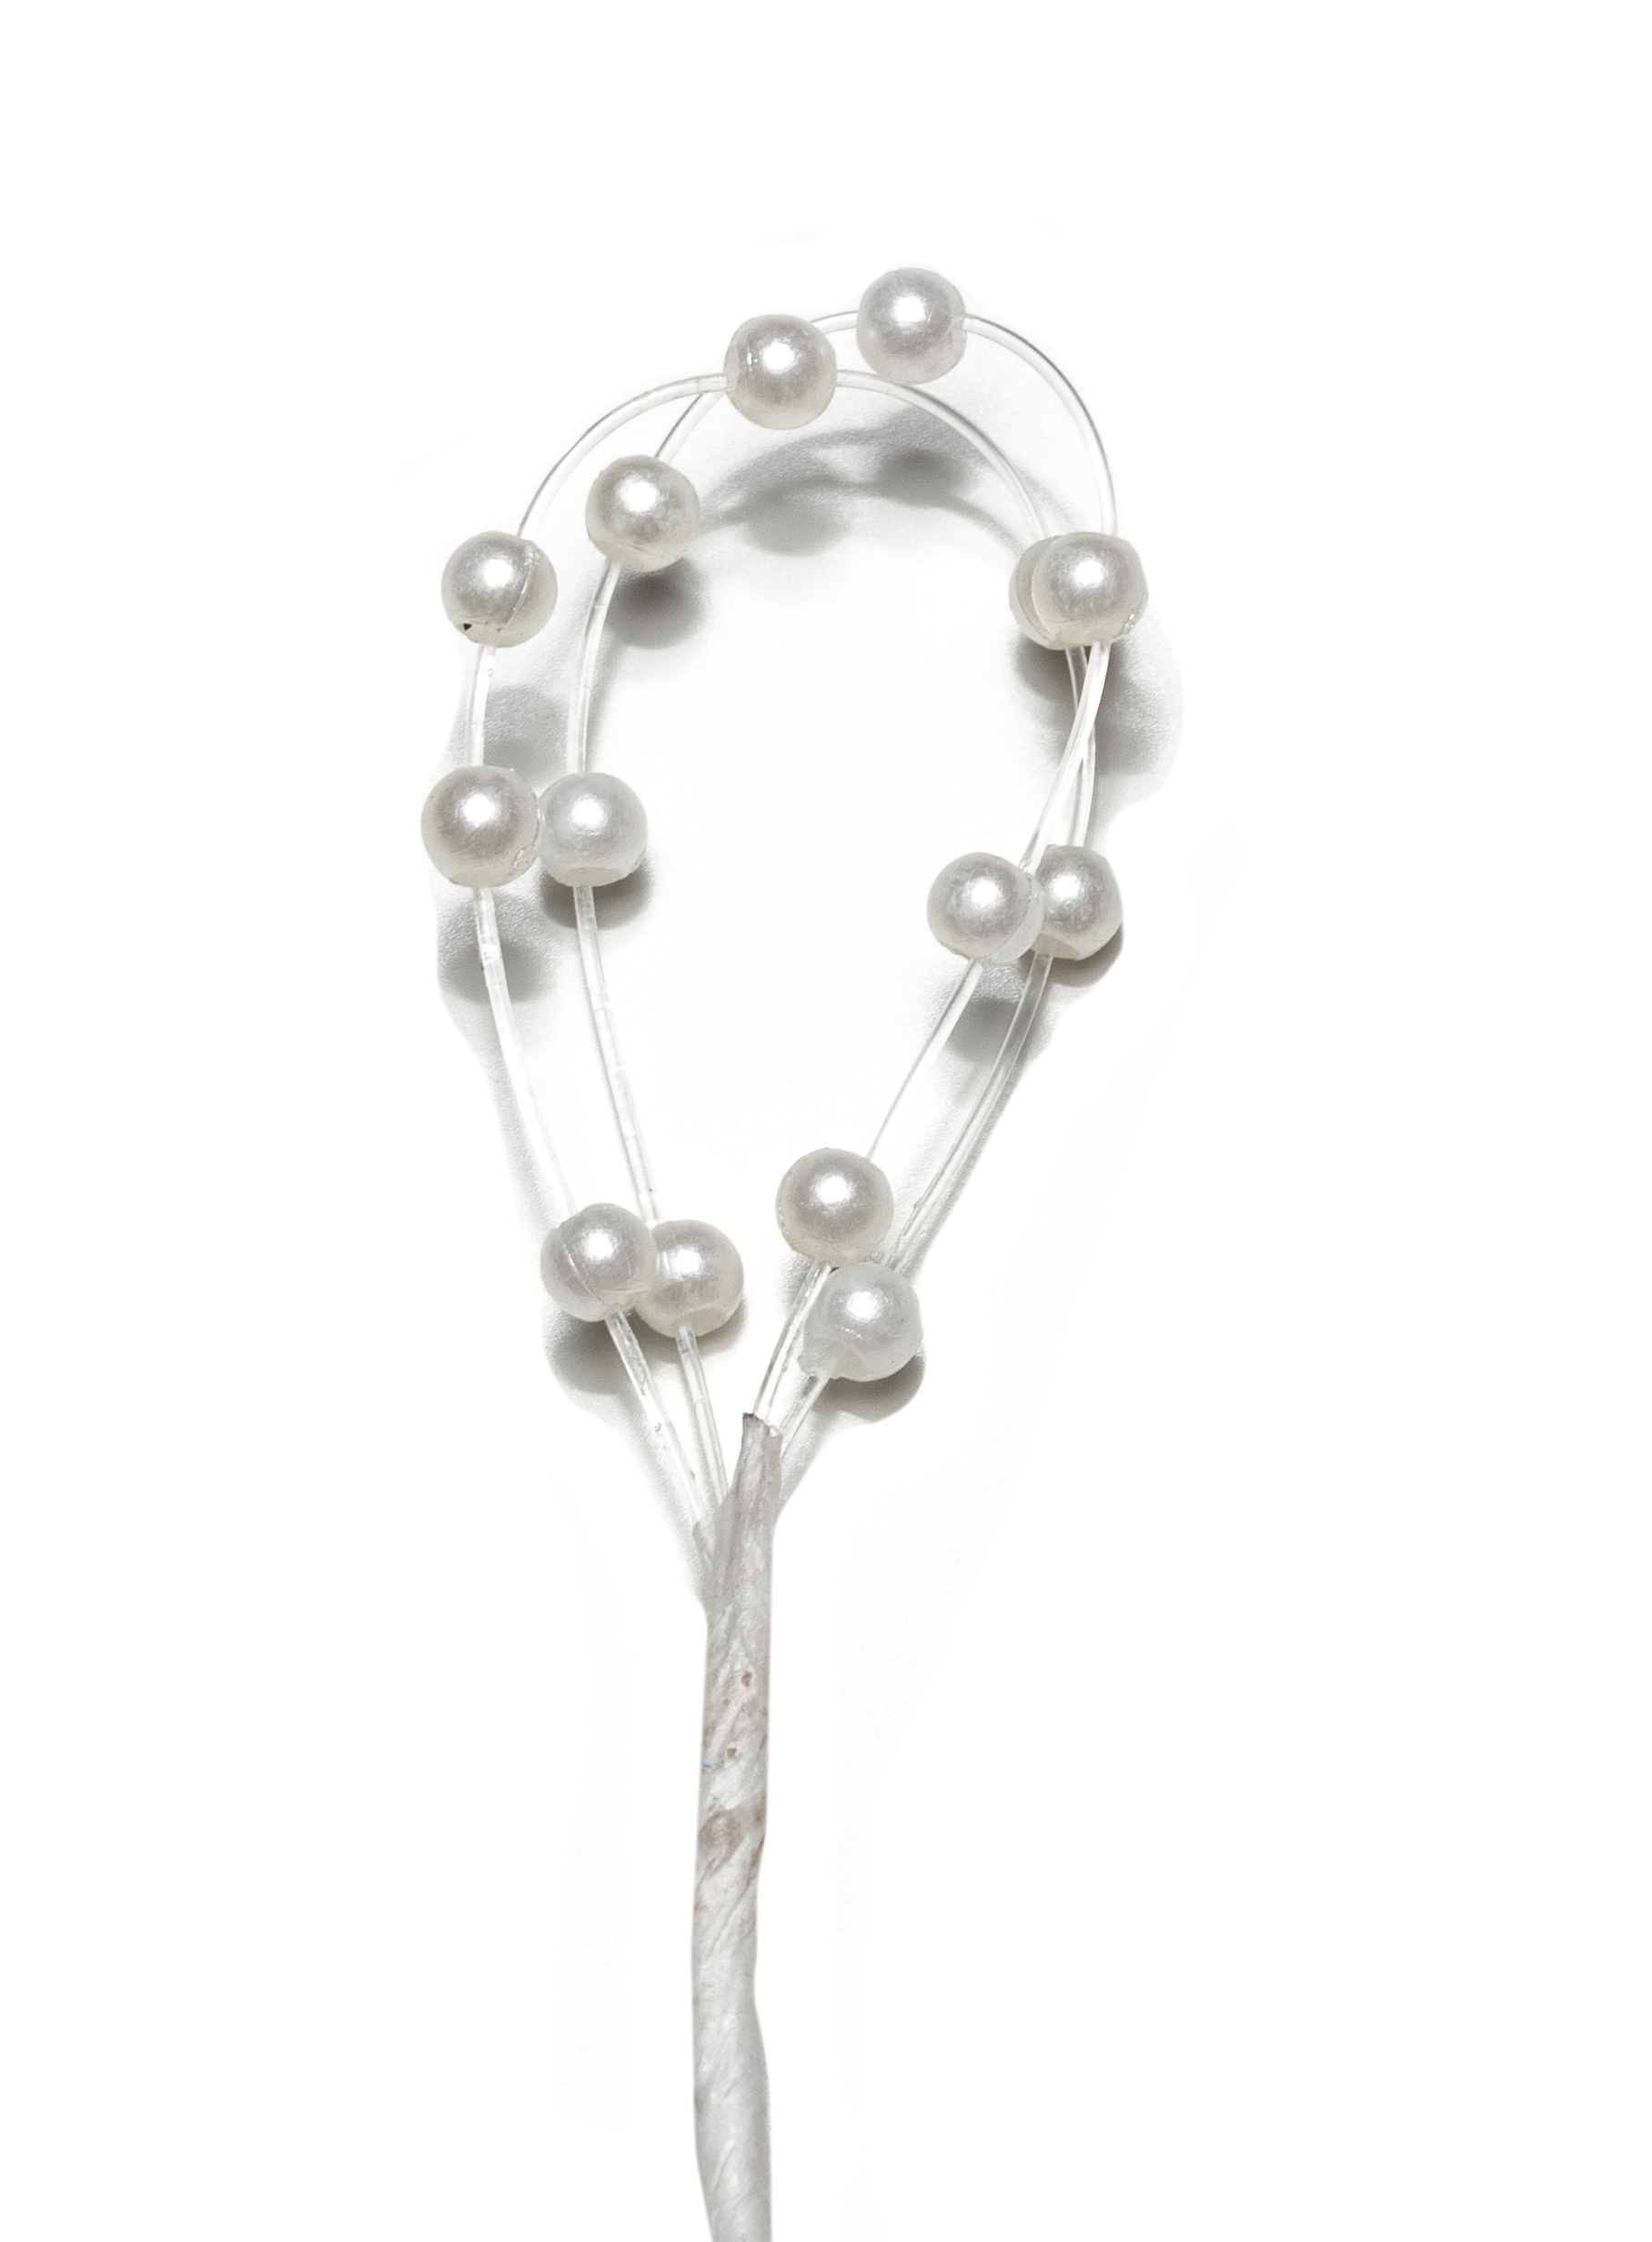 Mini-Perlenschlaufen weiß, dm ca. 2 cm, 6 Stück/Bund